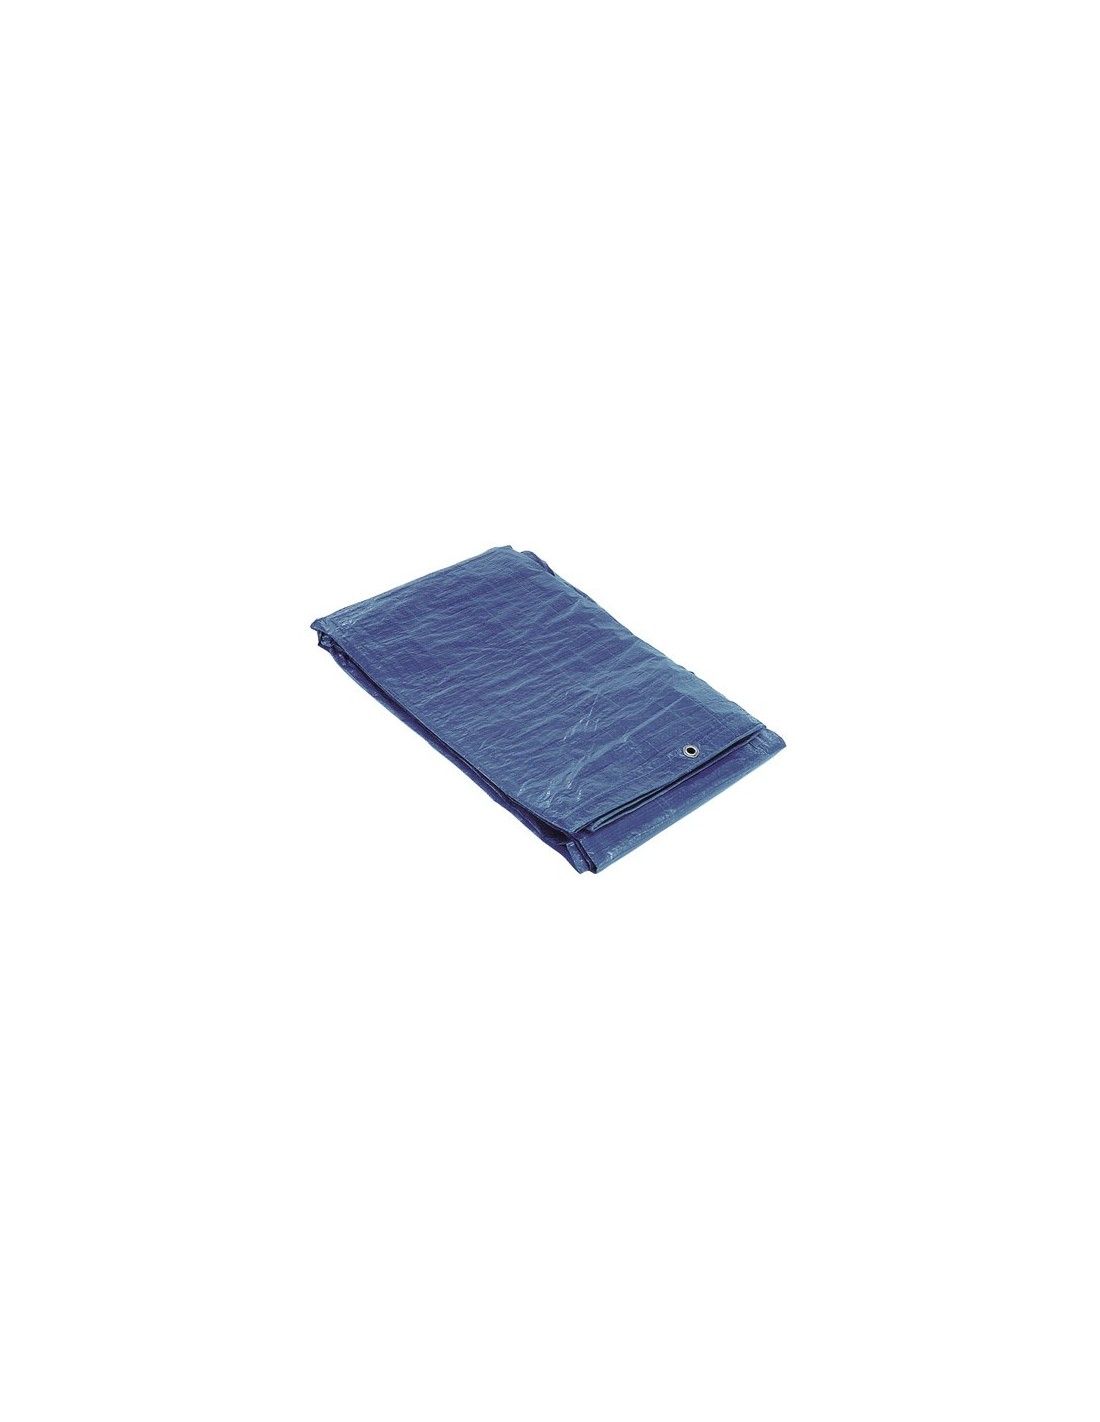 Lona impermeable azul de 3 x 3 metros